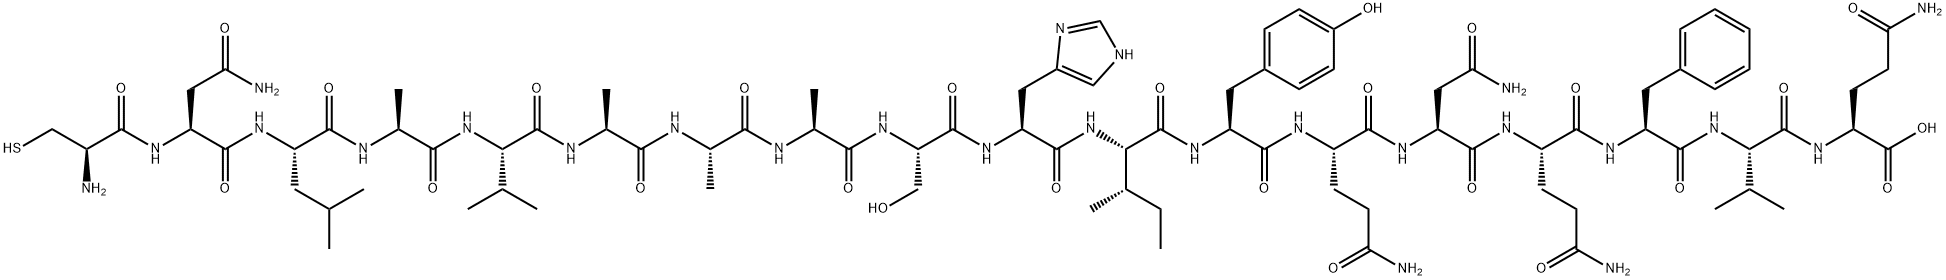 Cys-CD36 (139-155) trifluoroacetate salt H-Cys-Asn-Leu-Ala-Val-Ala-Ala-Ala-Ser-His-Ile-Tyr-Gln-Asn-Gln-Phe-Val-Gln-OH trifluoroacetate salt Structure